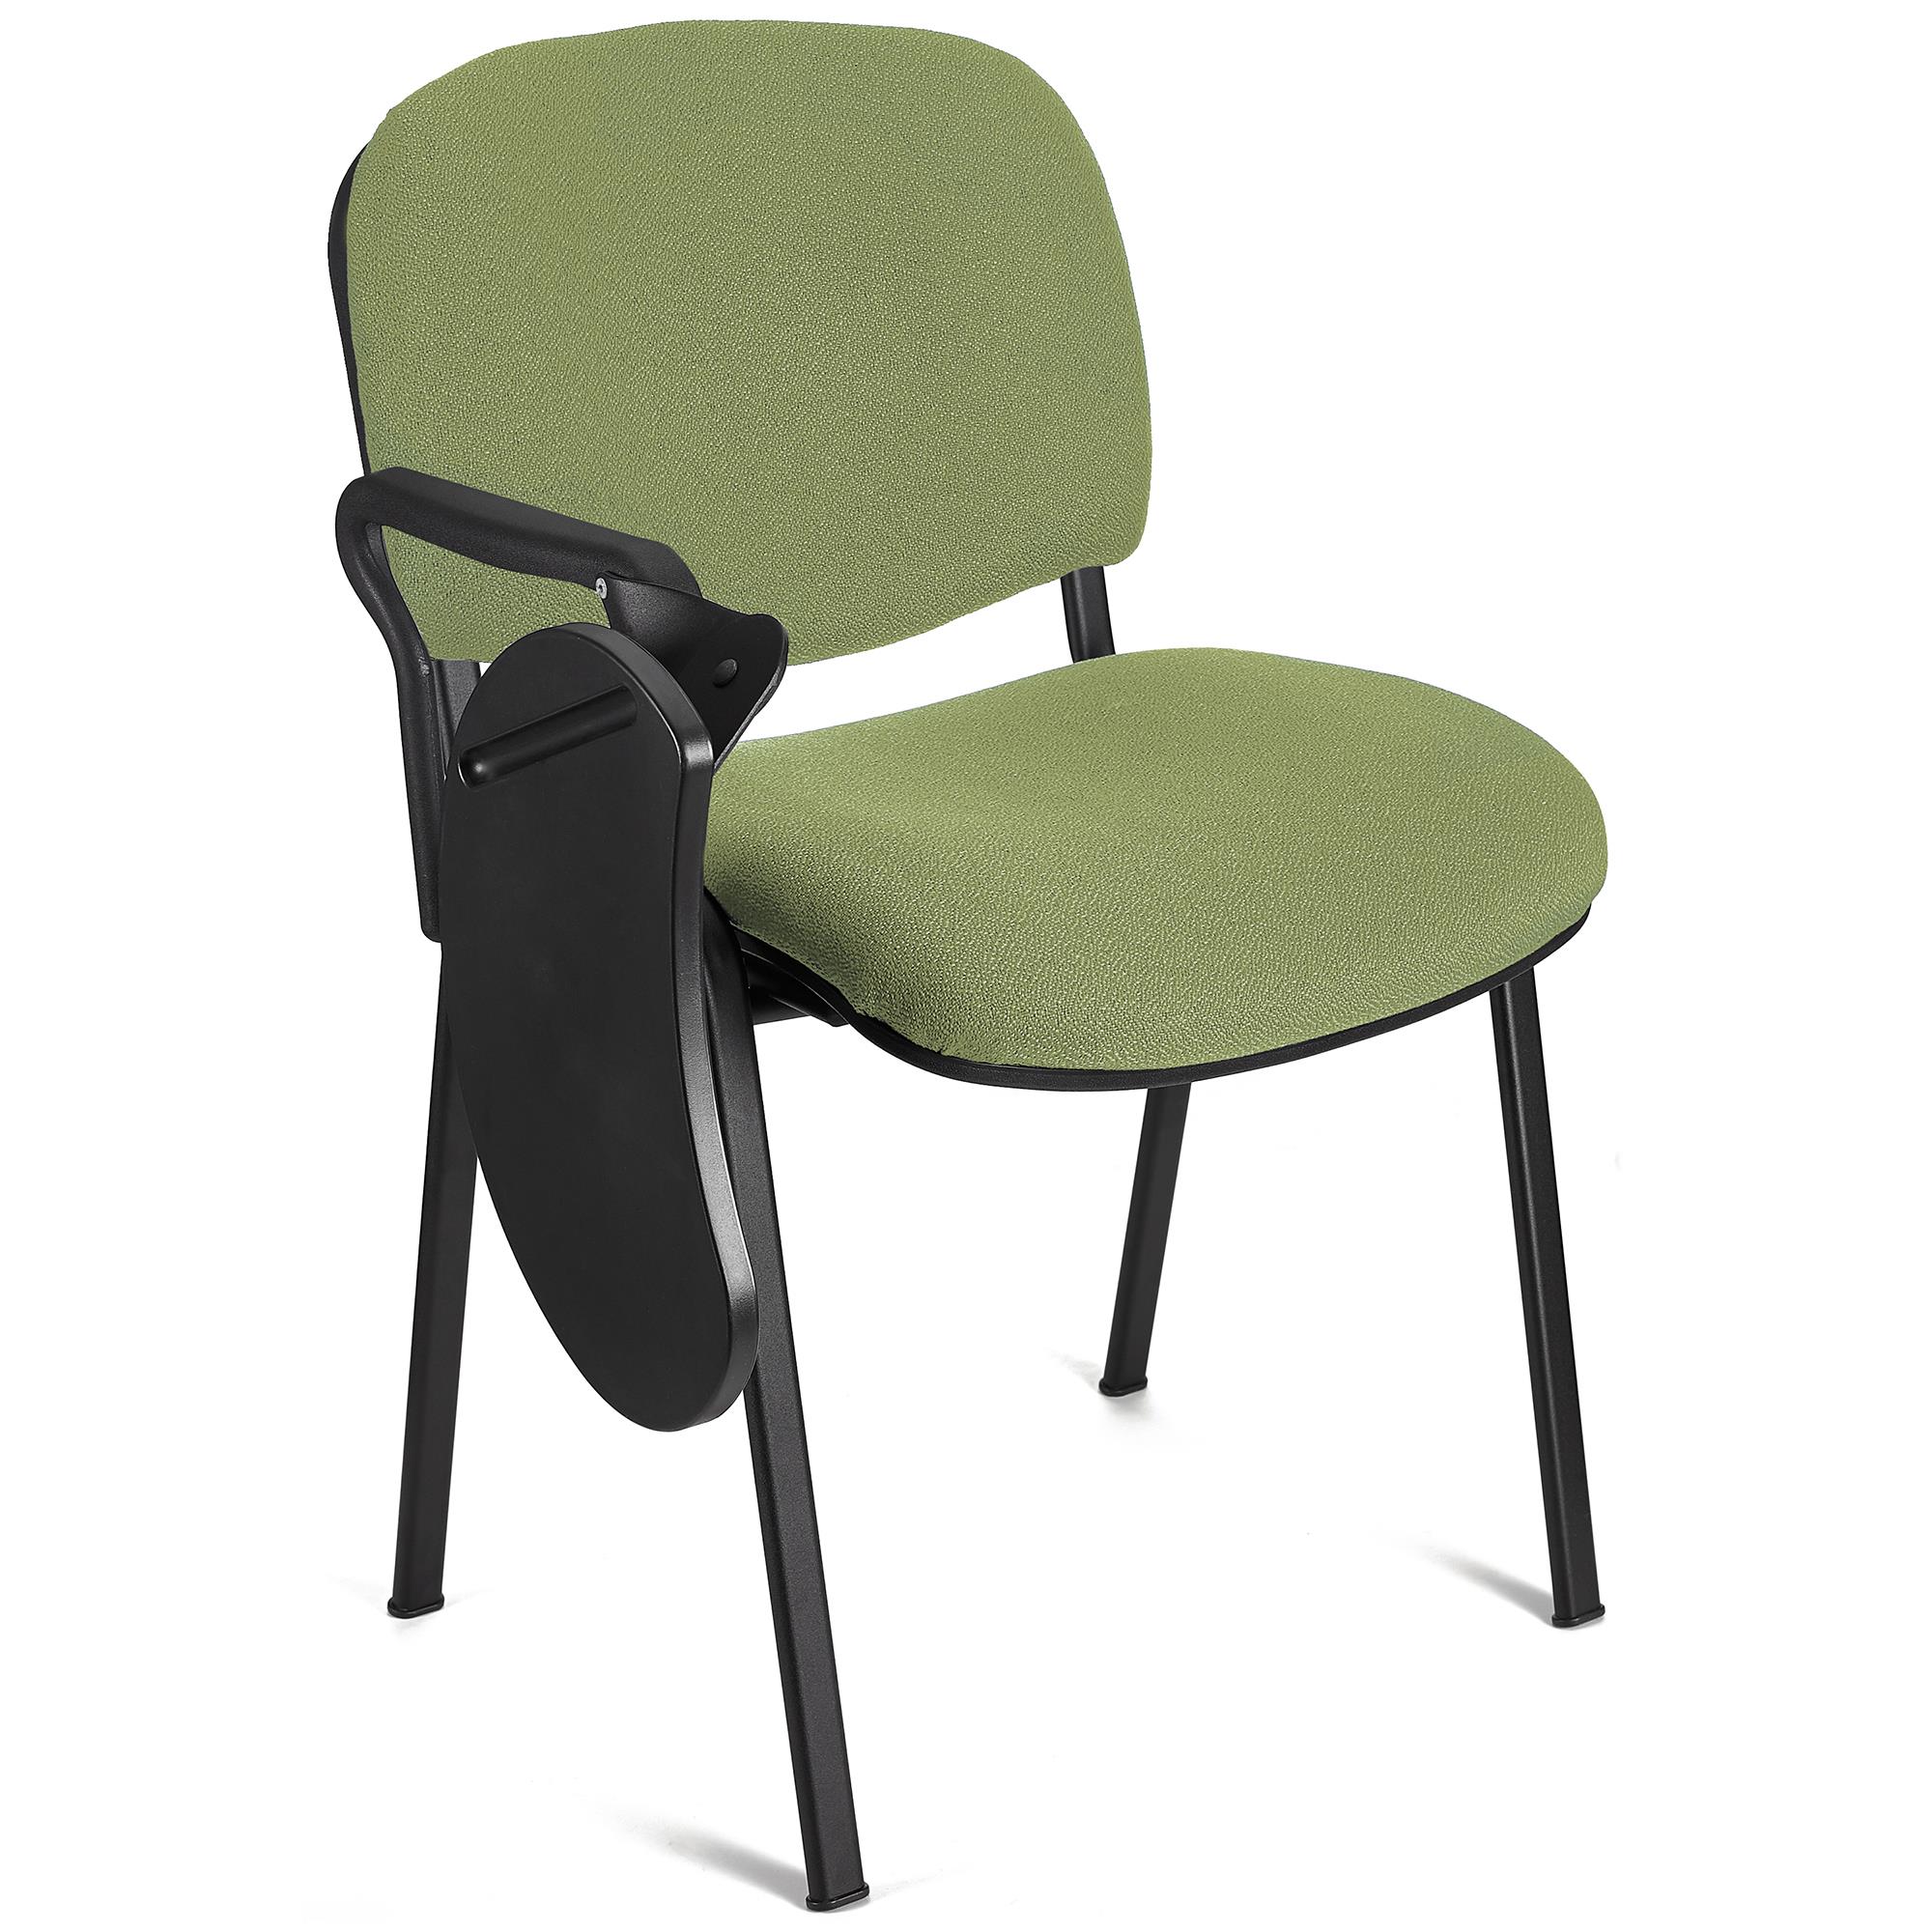 Sedia Conferenze MOBY con SCRITTOIO ribaltabile, Prezzo imbattibile, colore Verde con gambe Nere